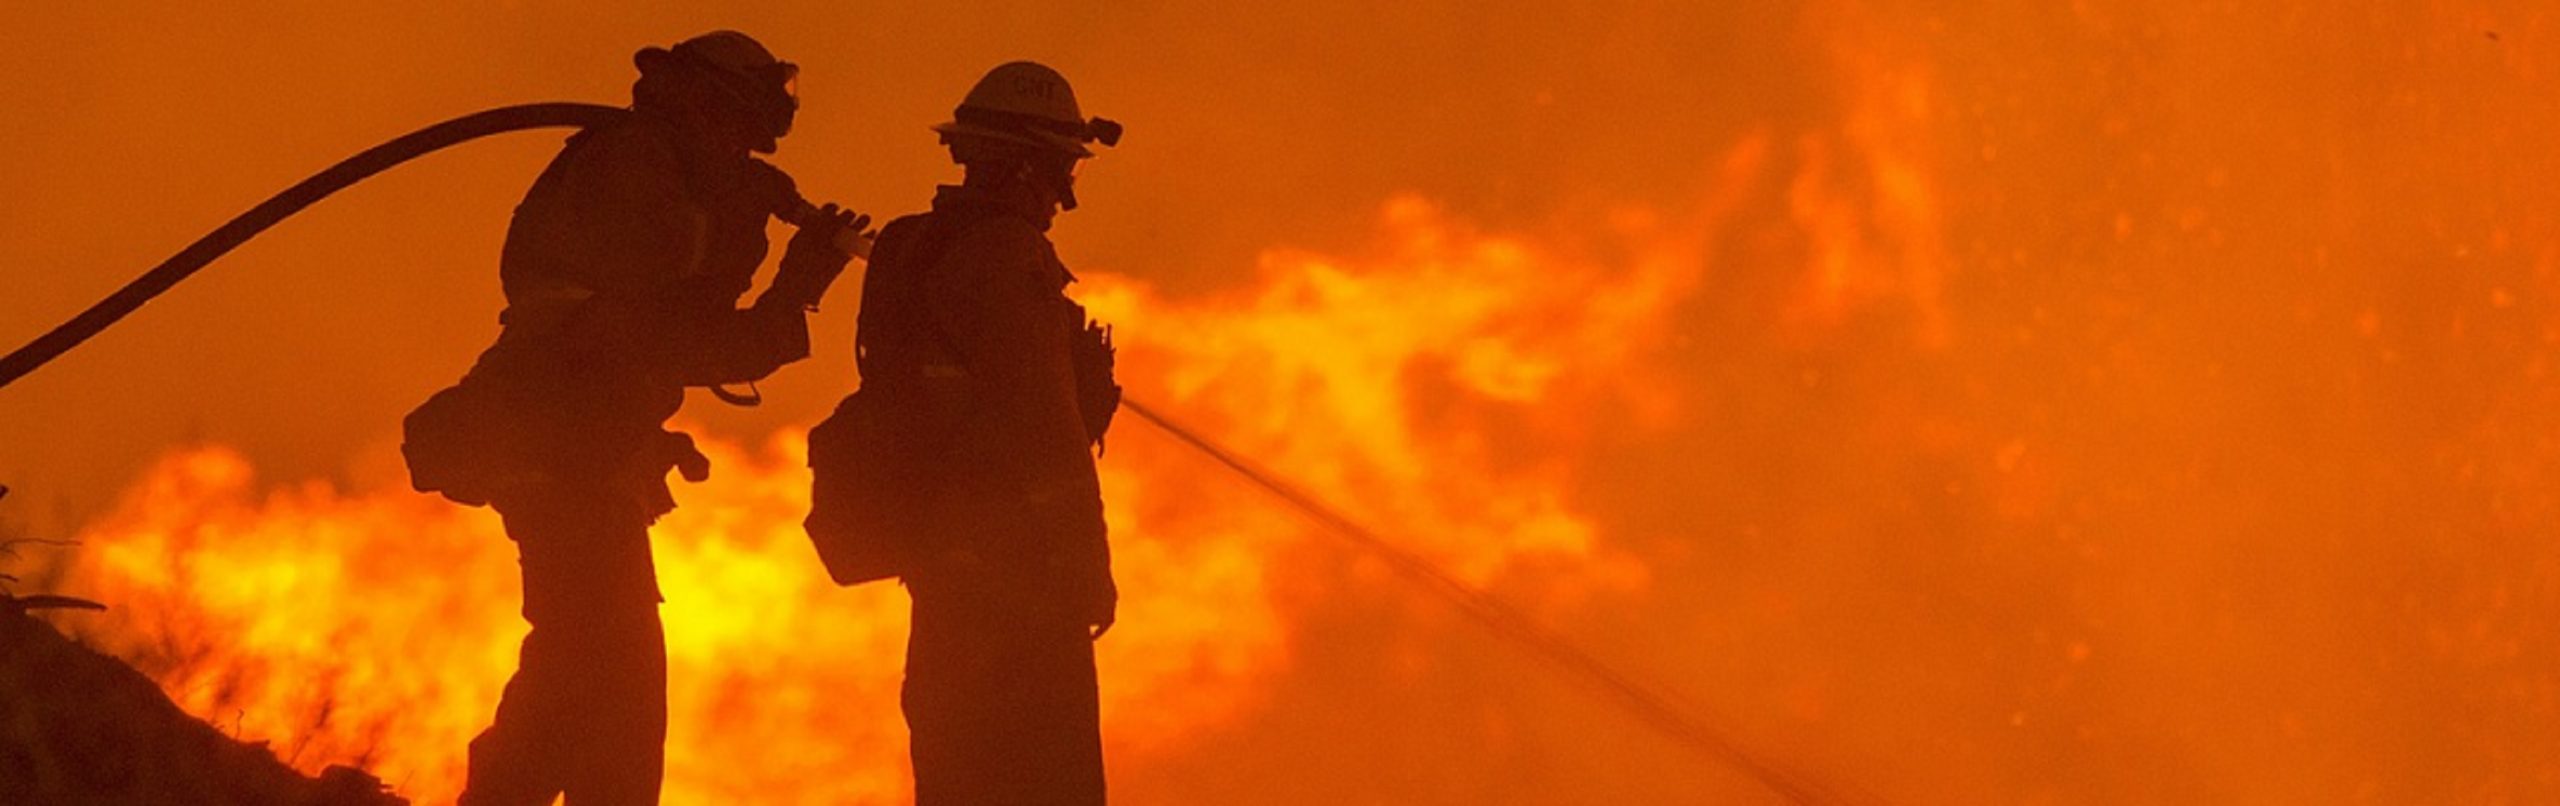 Bosbranden in Australië veroorzaakt door klimaatverandering of groen beleid? Dit is de bittere realiteit